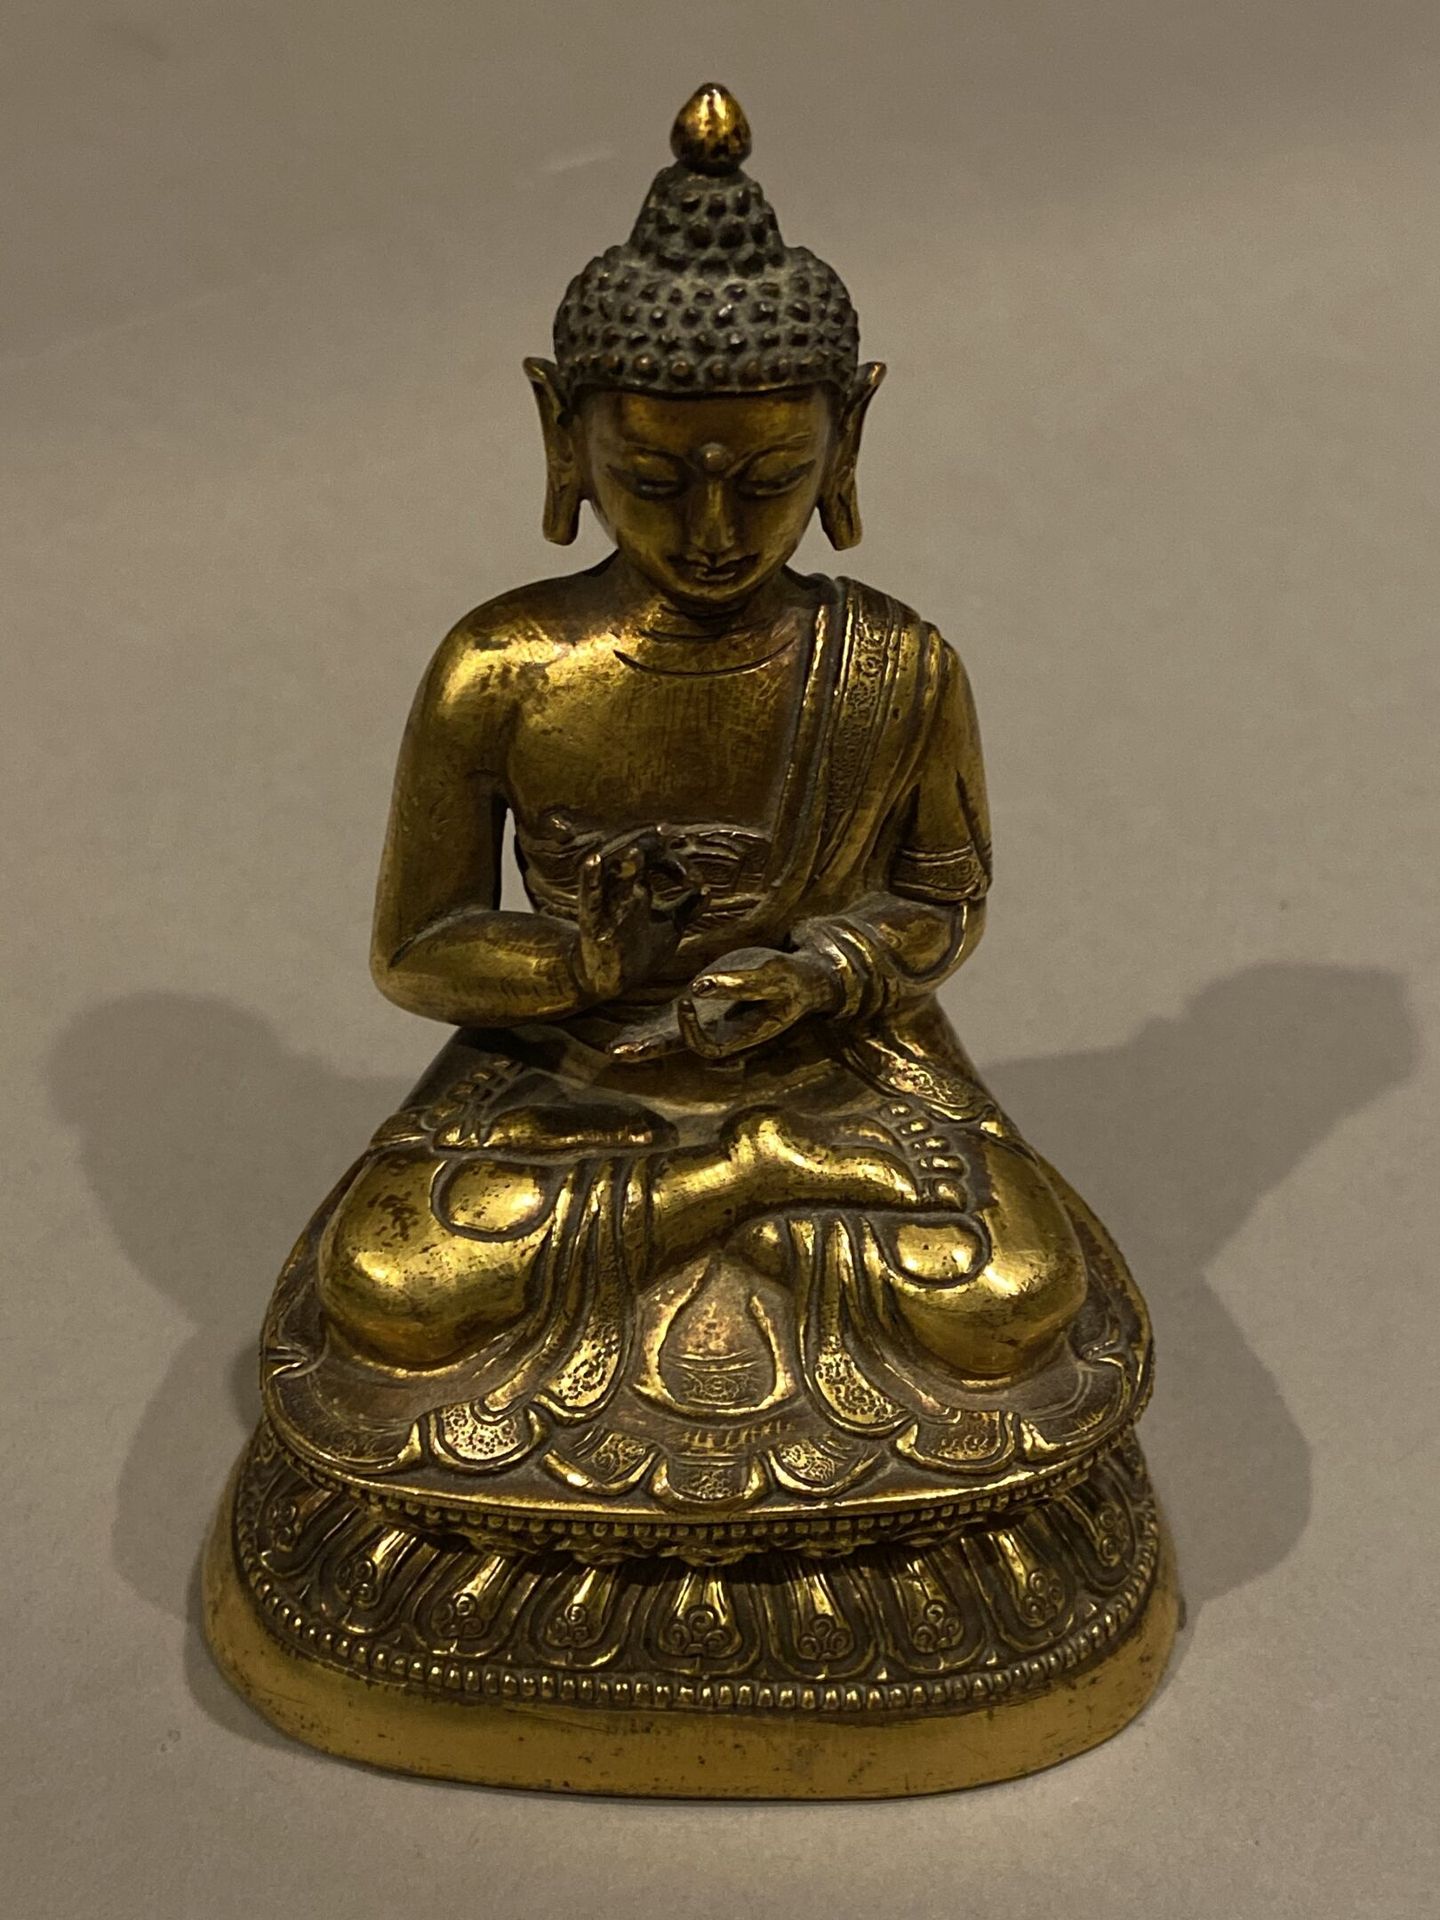 Null 鎏金铜佛像。 
汉藏19-20世纪
高约11厘米